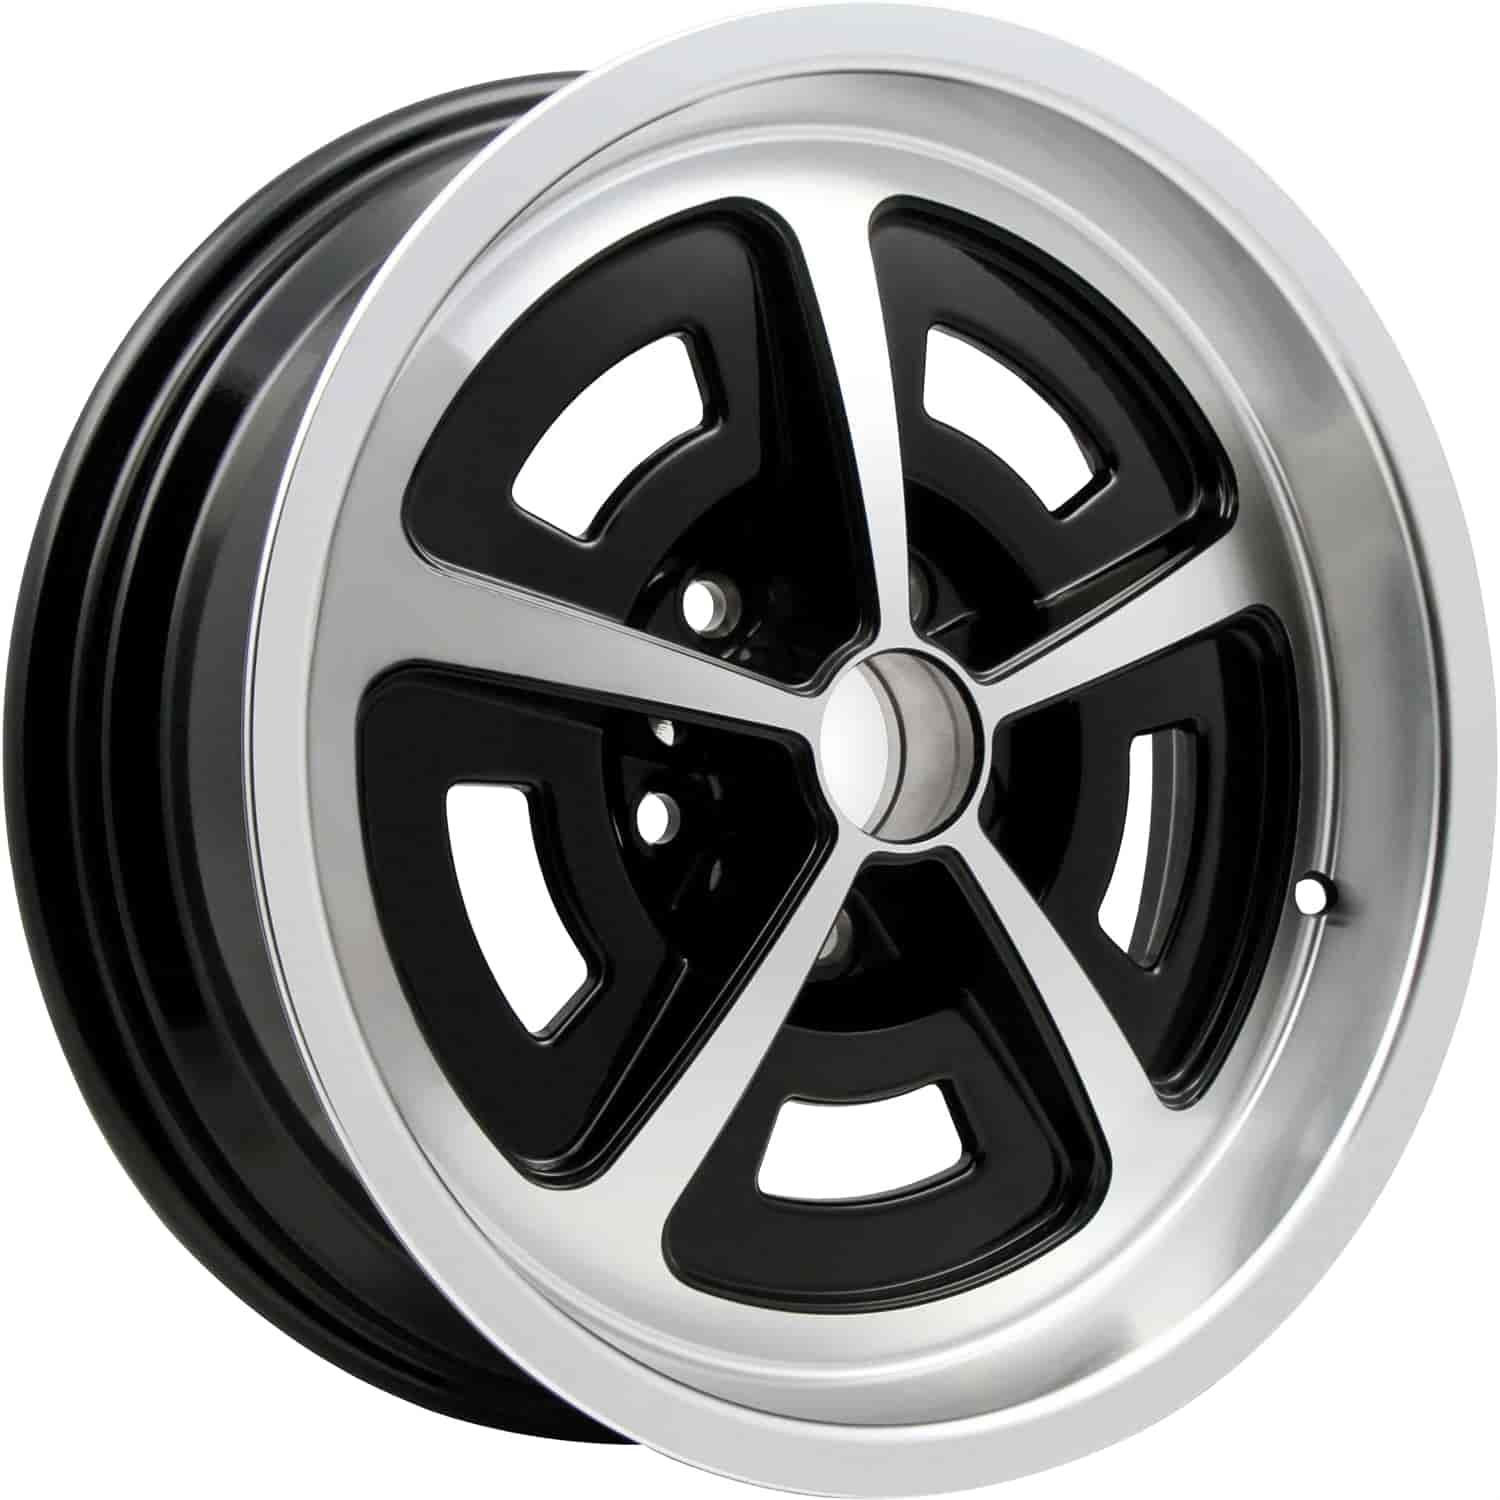 Magnum Aluminum Wheel - Size: 17" x 6"